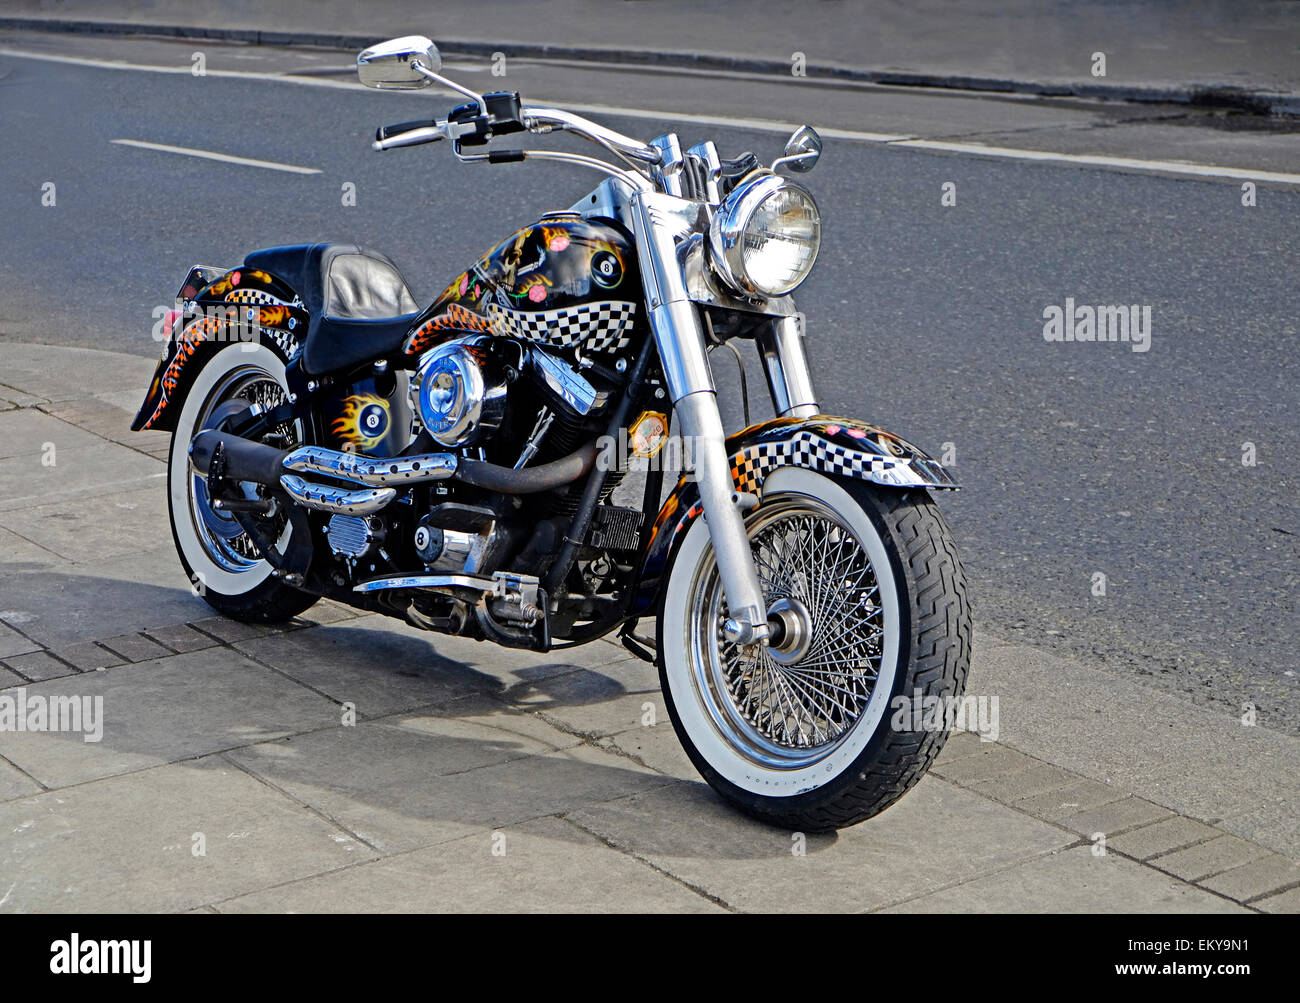 stark angepasste und illustrierte Harley Davidson Motorrad geparkt auf einer Straße in Dublin. Irland Stockfoto